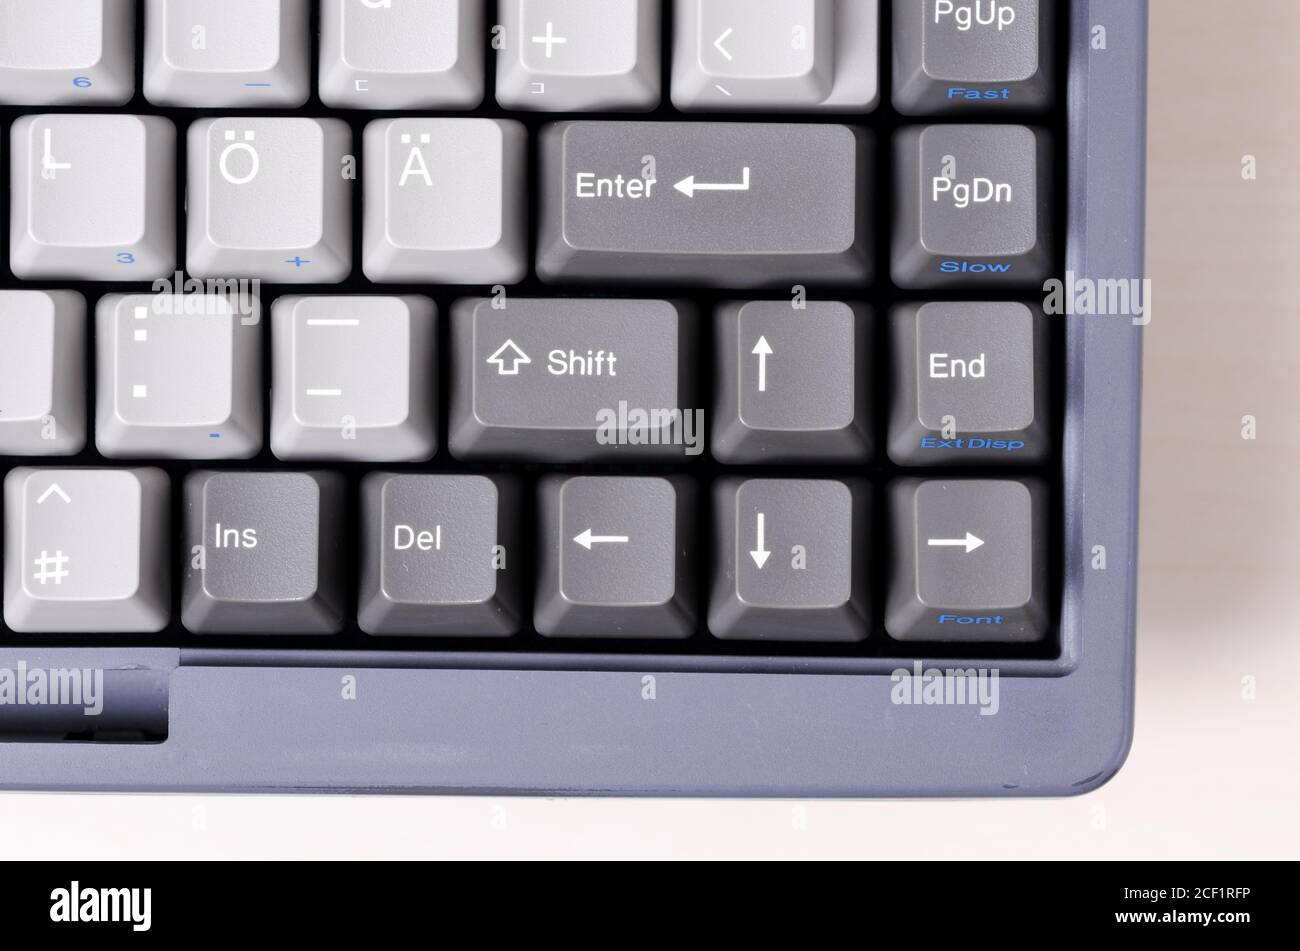 Antiguo, obsoleto, antiguo PC ordenador portátil teclado, primer plano. Macro, cambio gris y teclas de entrada con símbolos, flechas, estudio interior Foto de stock